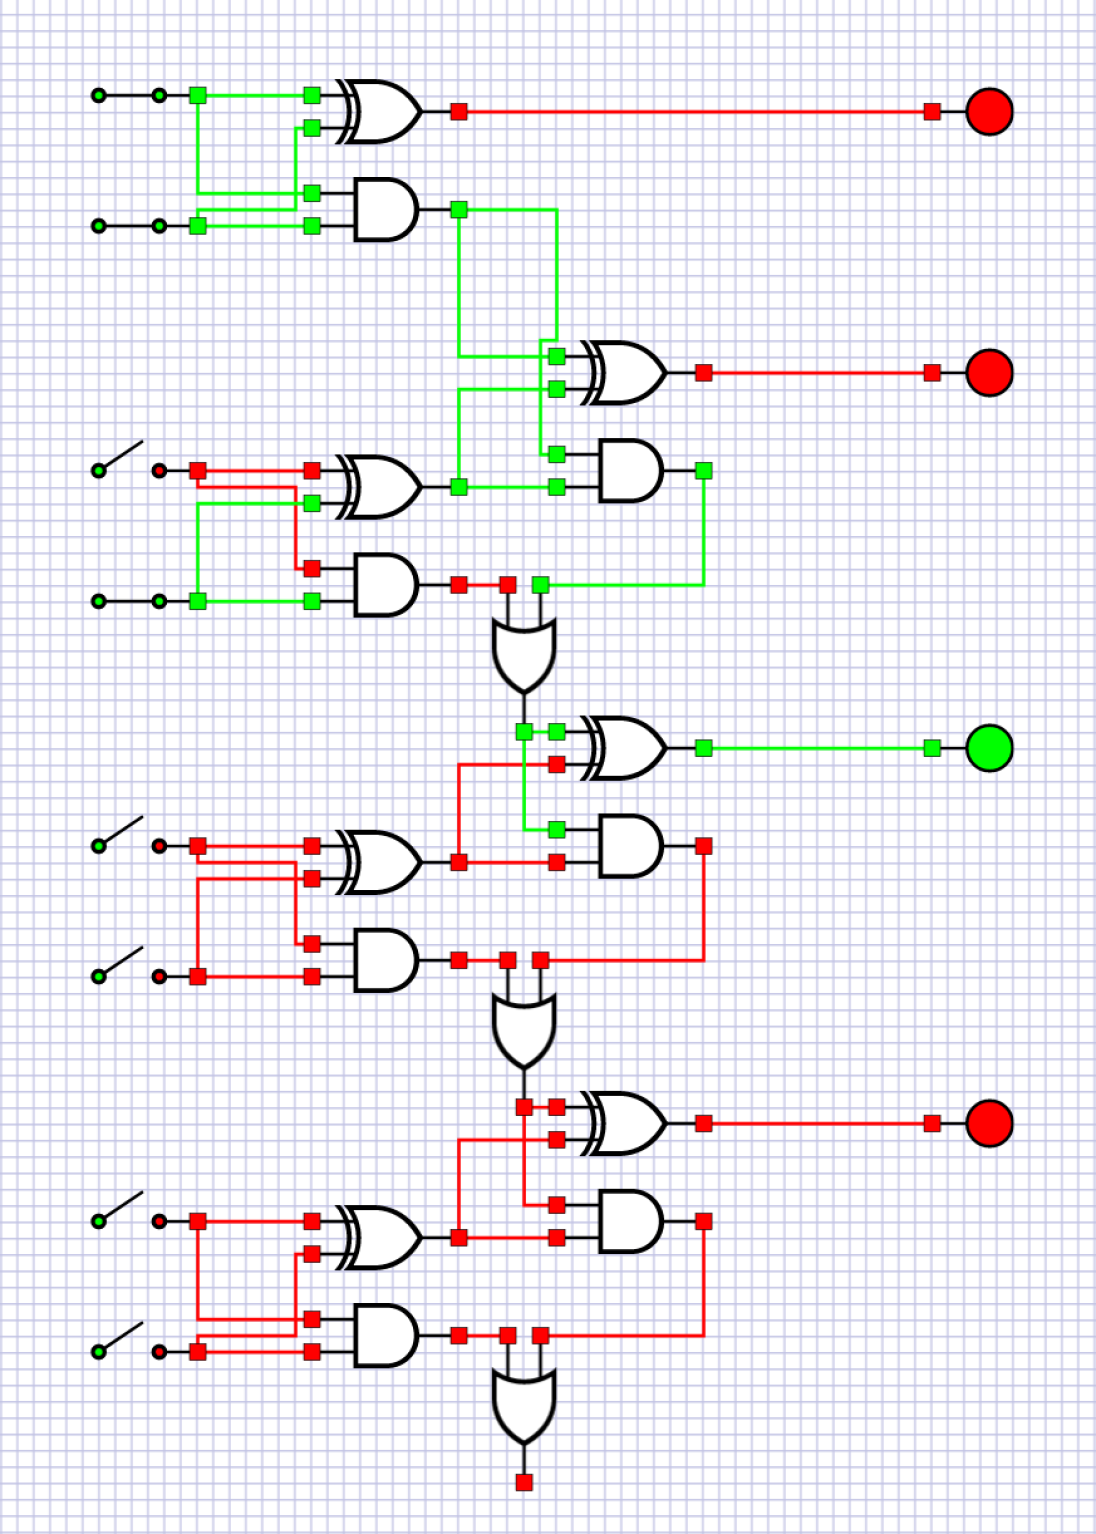 Čtyřbitová sčítačka - Sčítací obvod pro sčítání dvou čtyřbitových čísel vytvořený v aplikaci